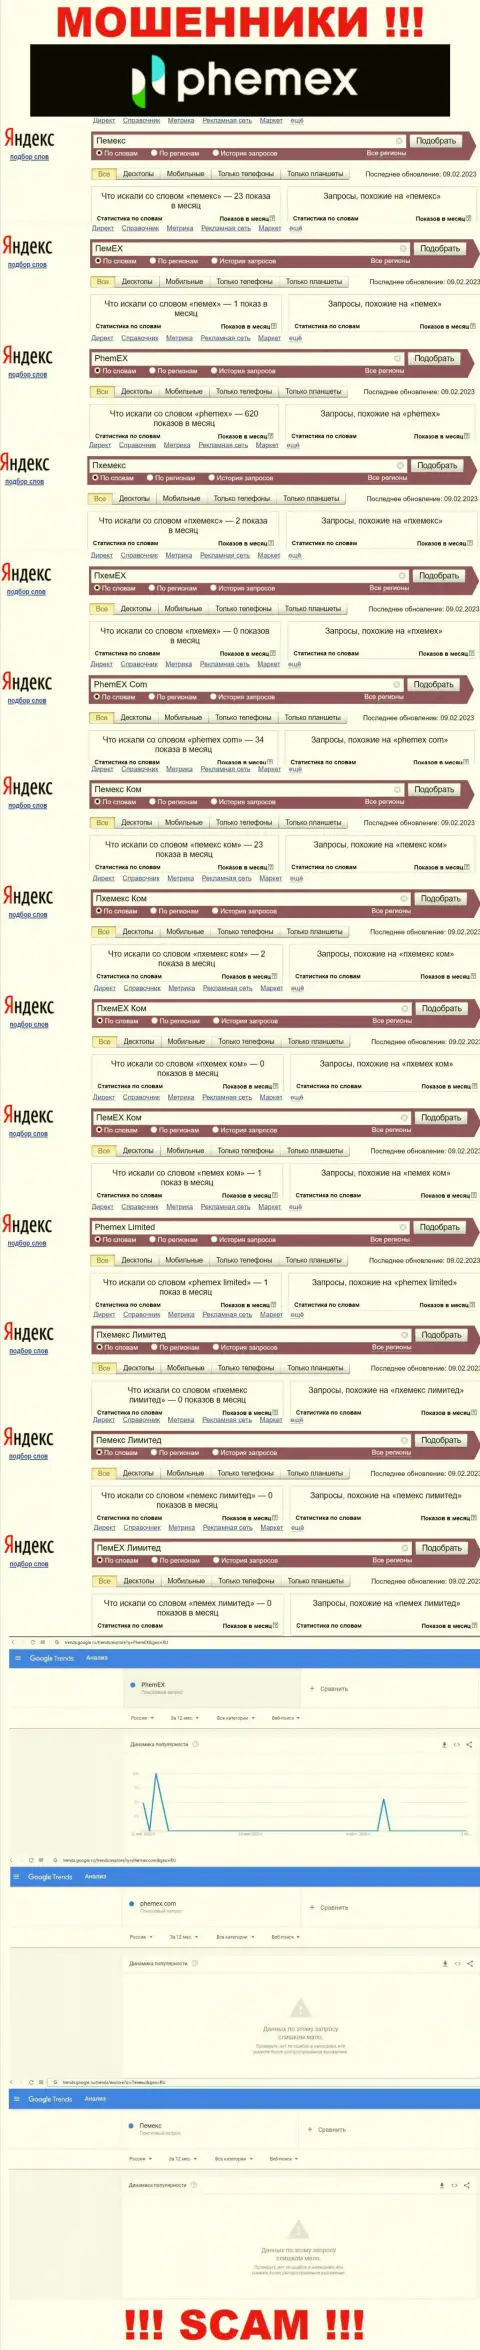 Детальная информация по количеству онлайн-запросов по мошенникам Phemex Limited в интернете